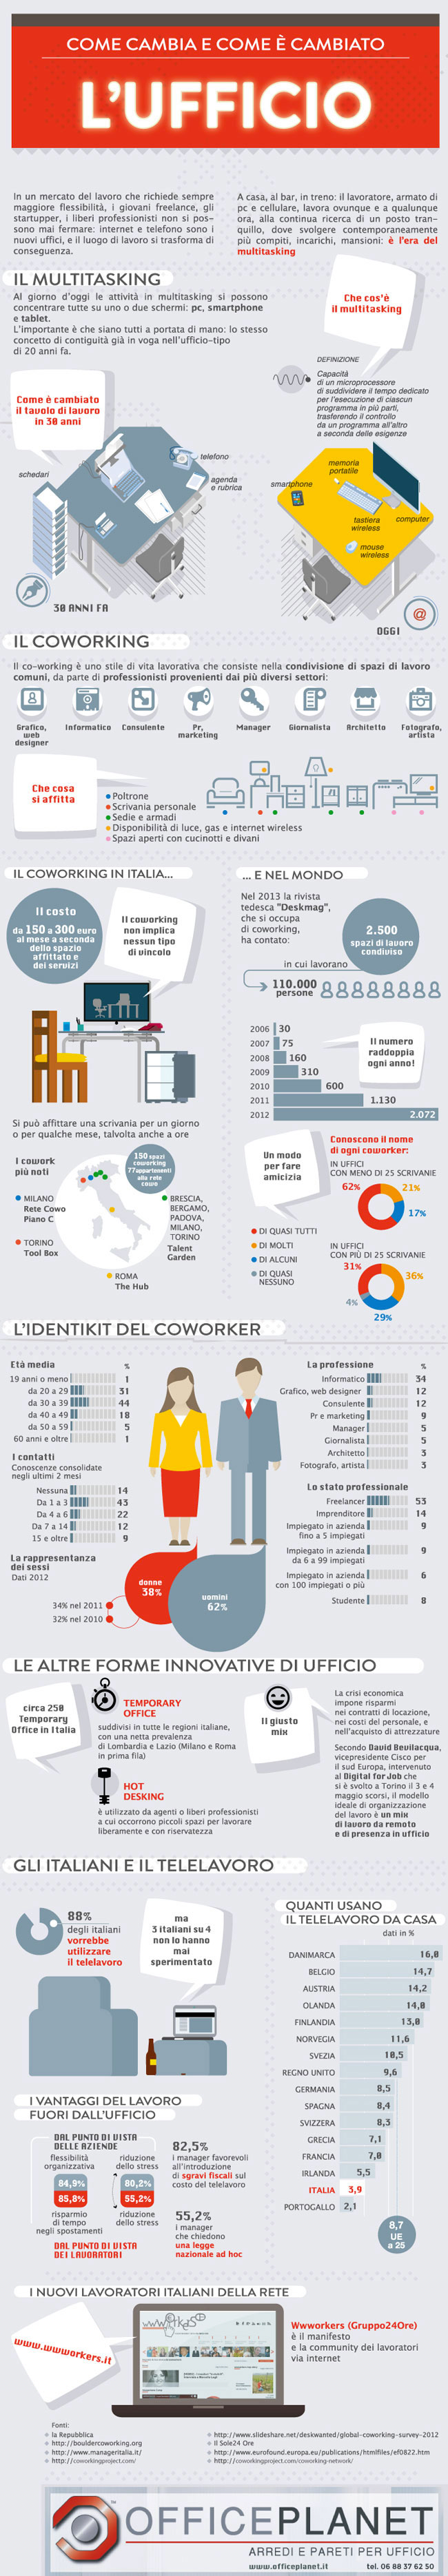 Infografica Come Cambia e come è cambiato L'ufficio - Office Planet srl